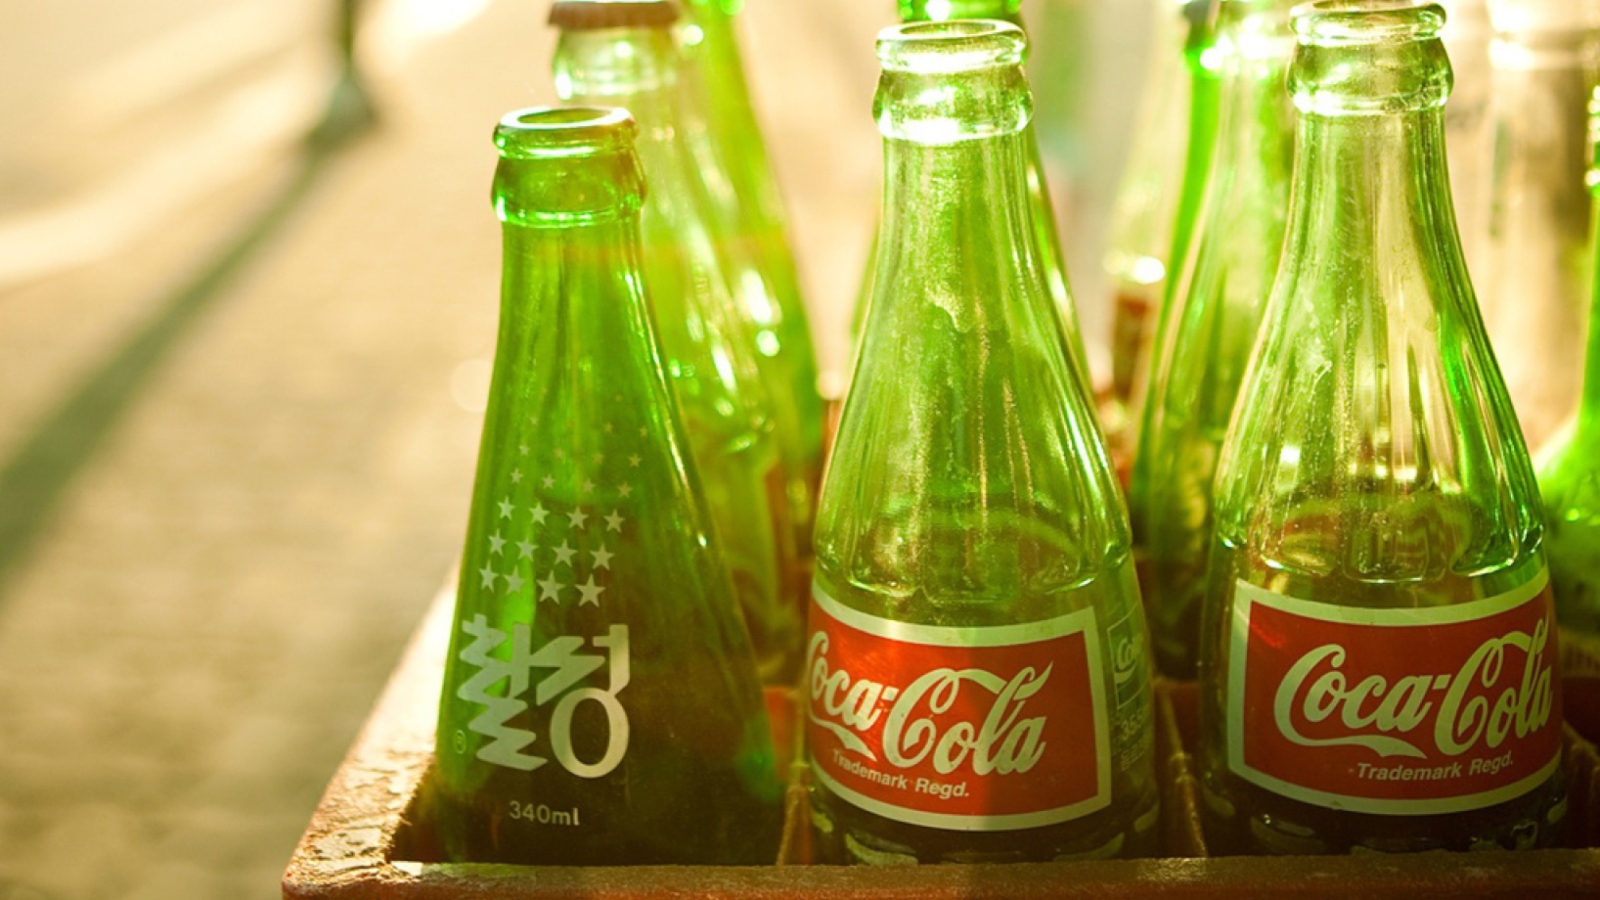 Das Coca Cola Bottles Wallpaper 1600x900